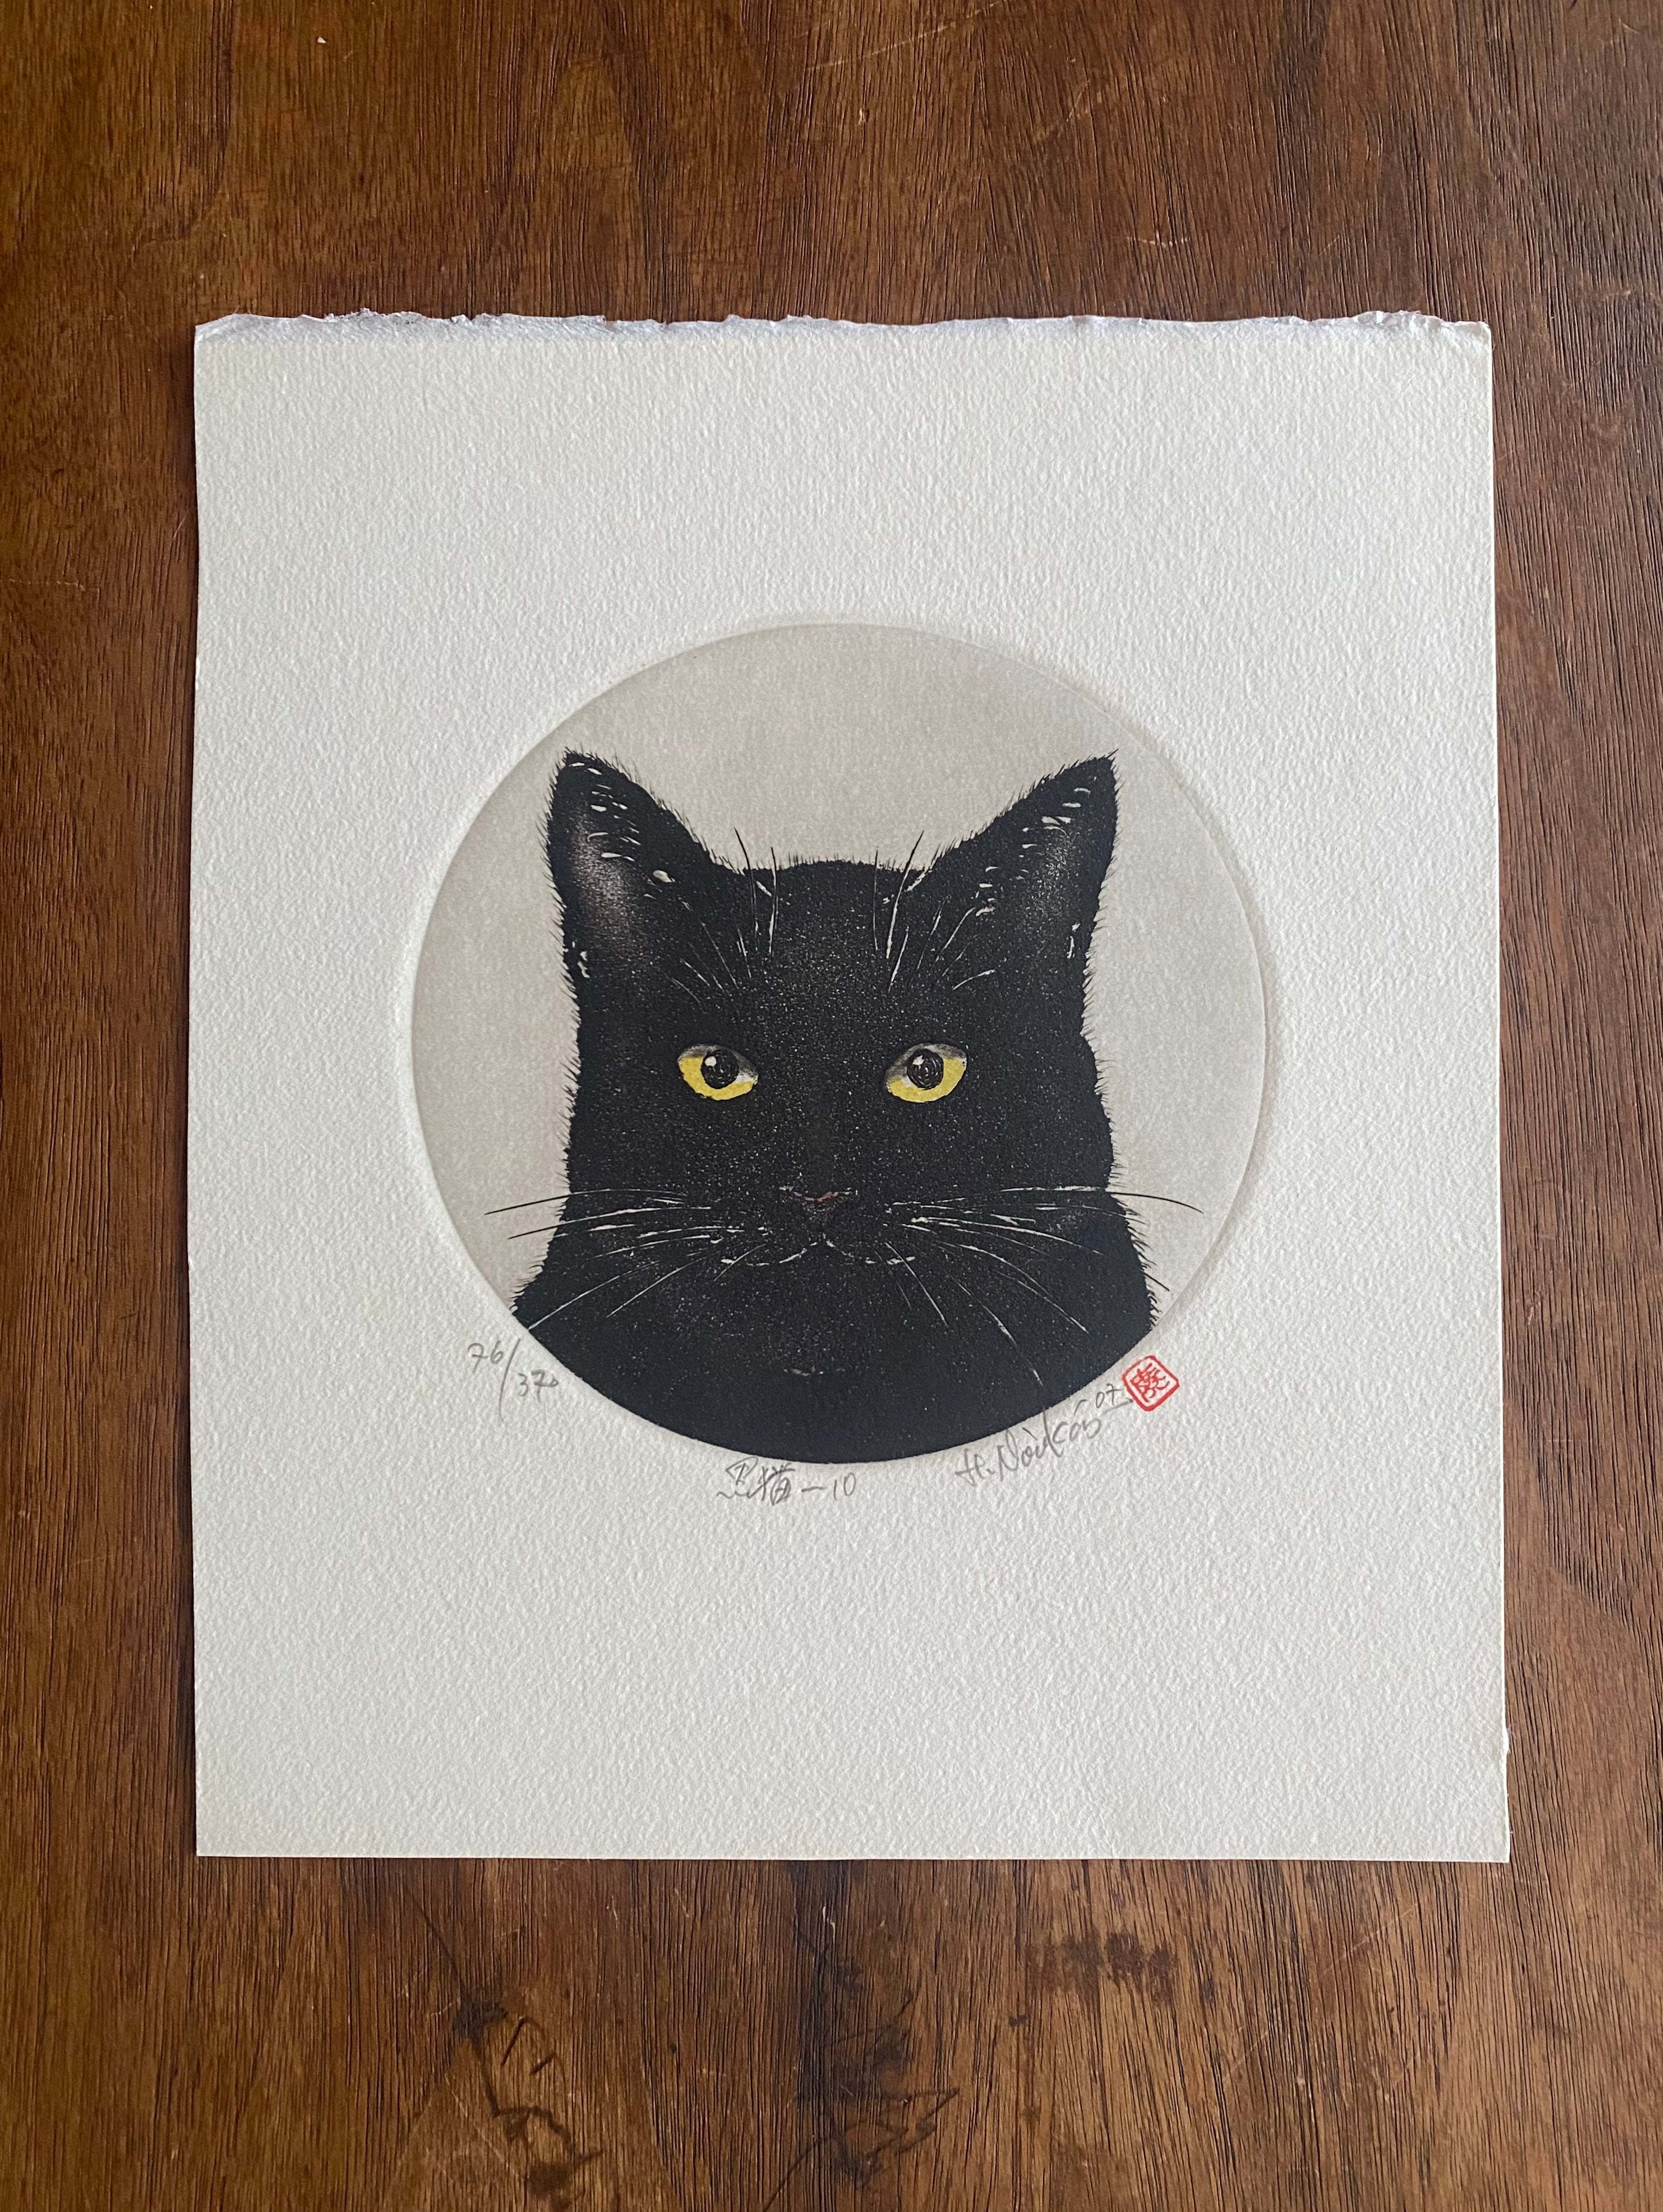 Hiroto Norikane (B. - 1949): Black Cat - 10, hand-signed.